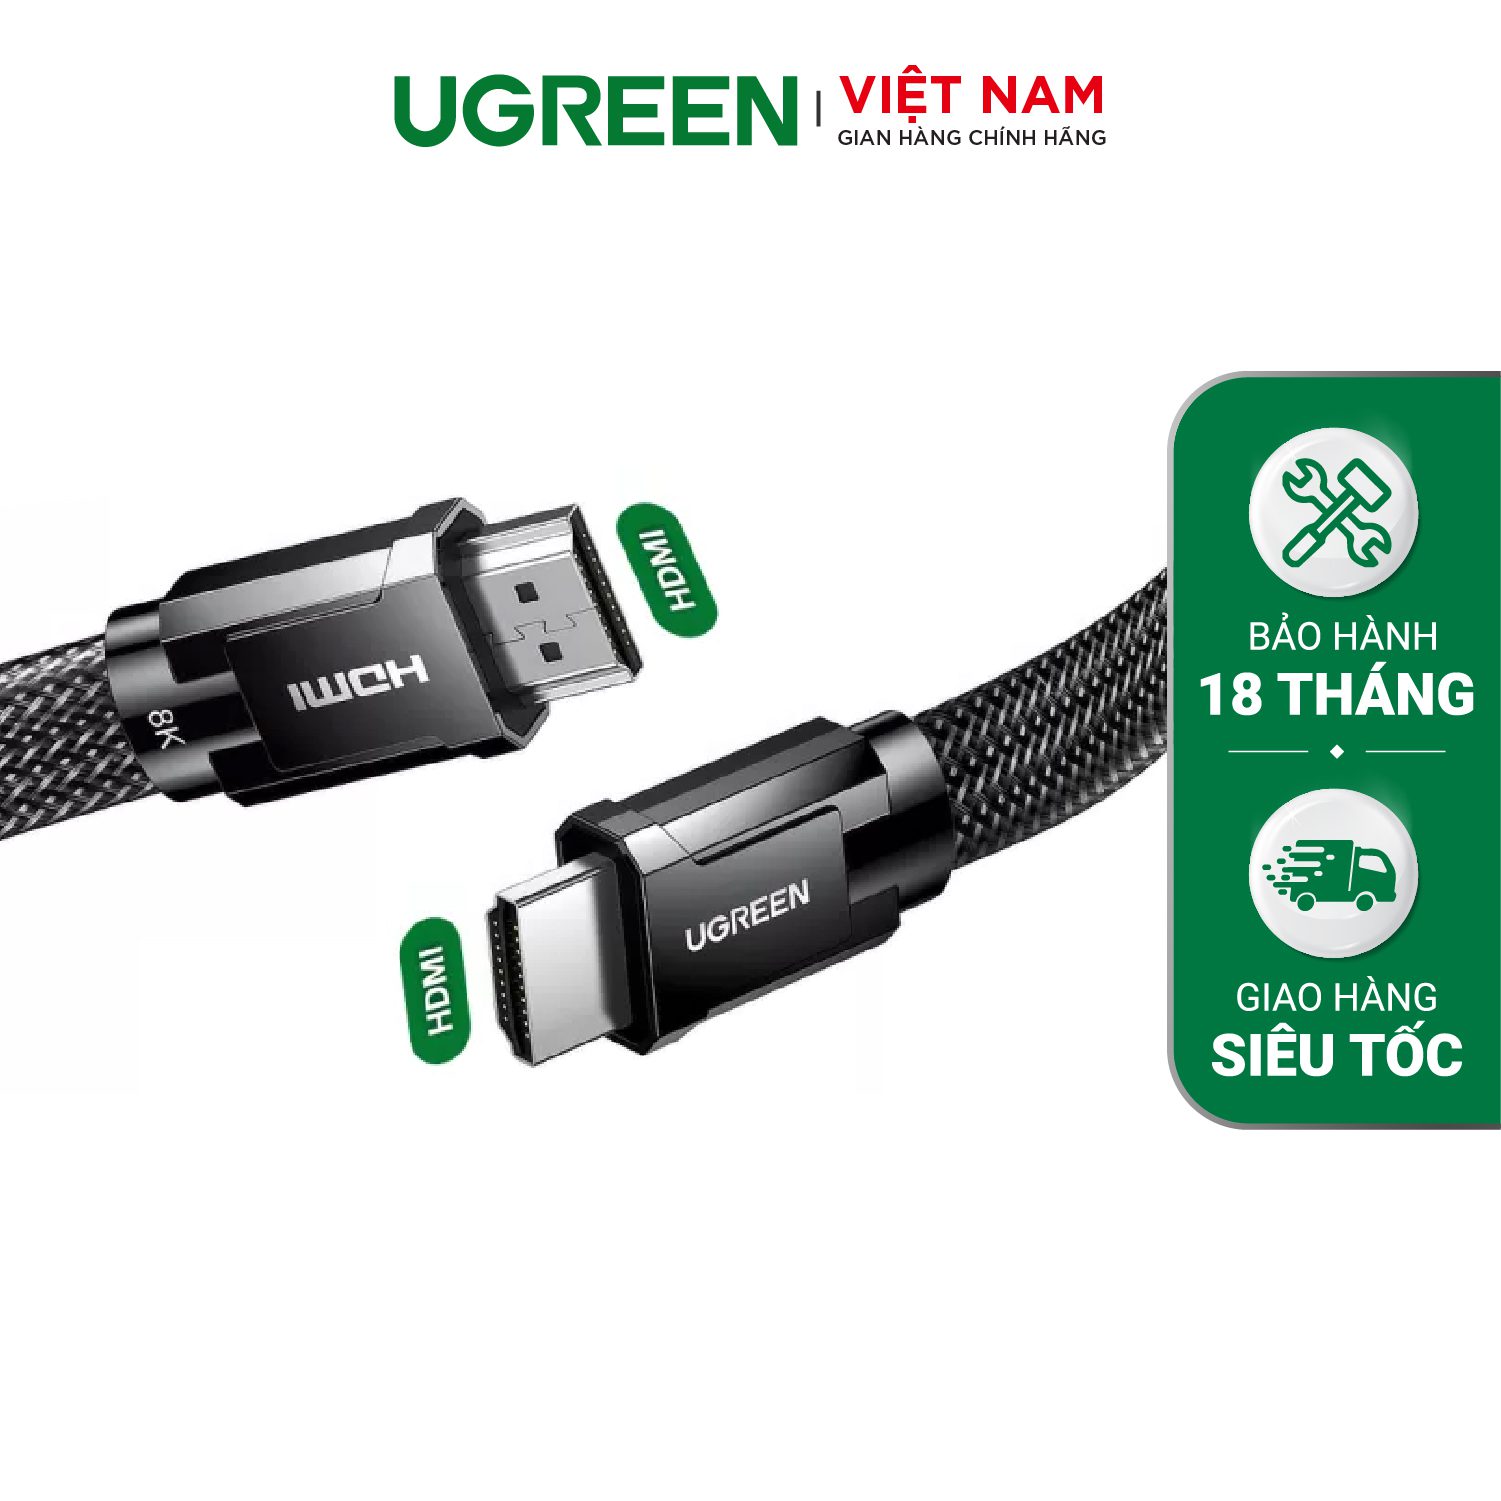 Cáp HDMI 2.1 dây dẹt bện UGREEN HD145 – Ugreen Việt Nam